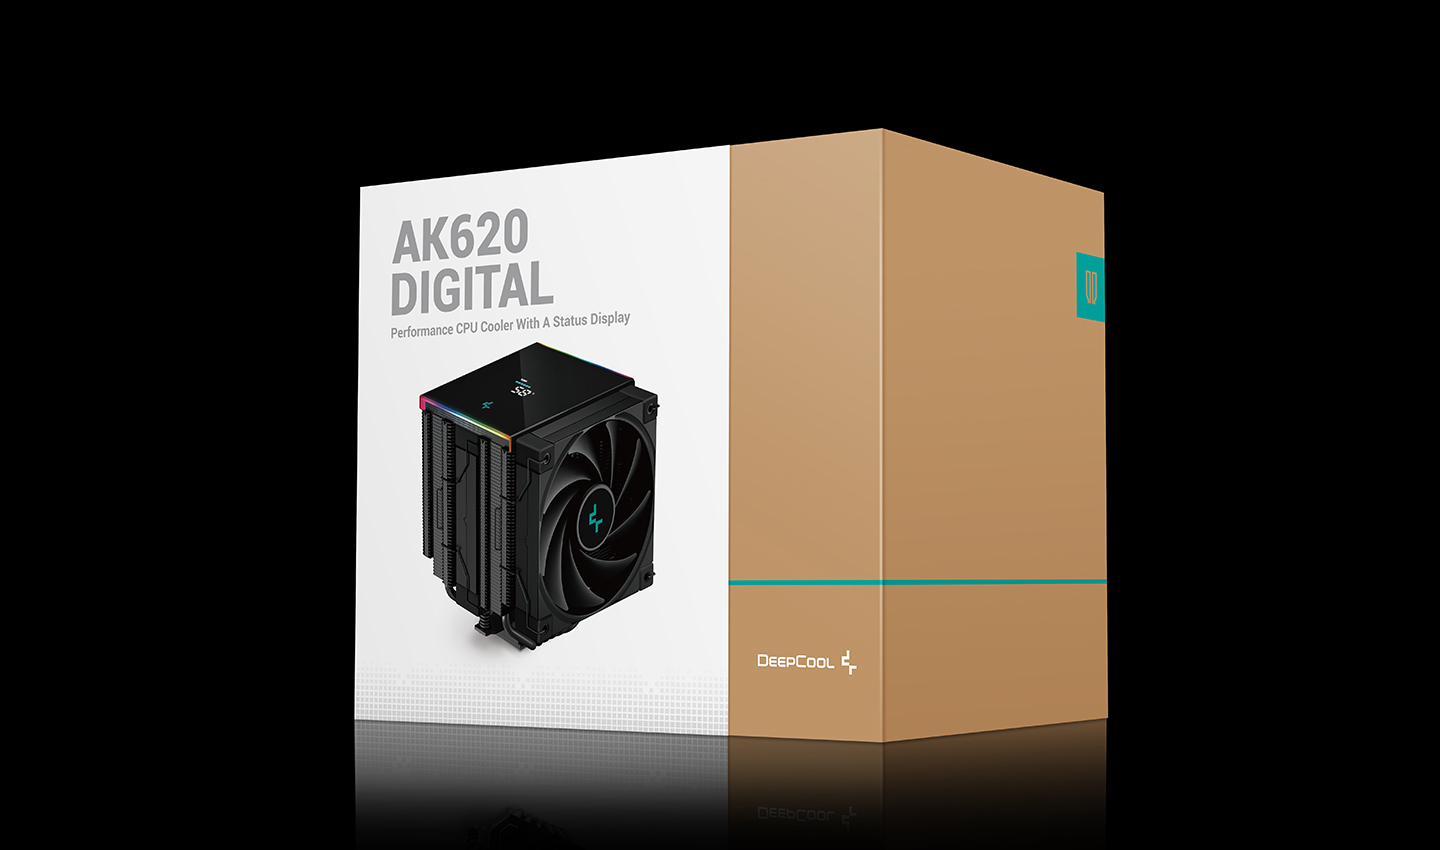 Tản Nhiệt Khí Deepcool AK620 Digital Màu Đen - Có Đồng Hồ Hiển Thị Nhiệt Độ